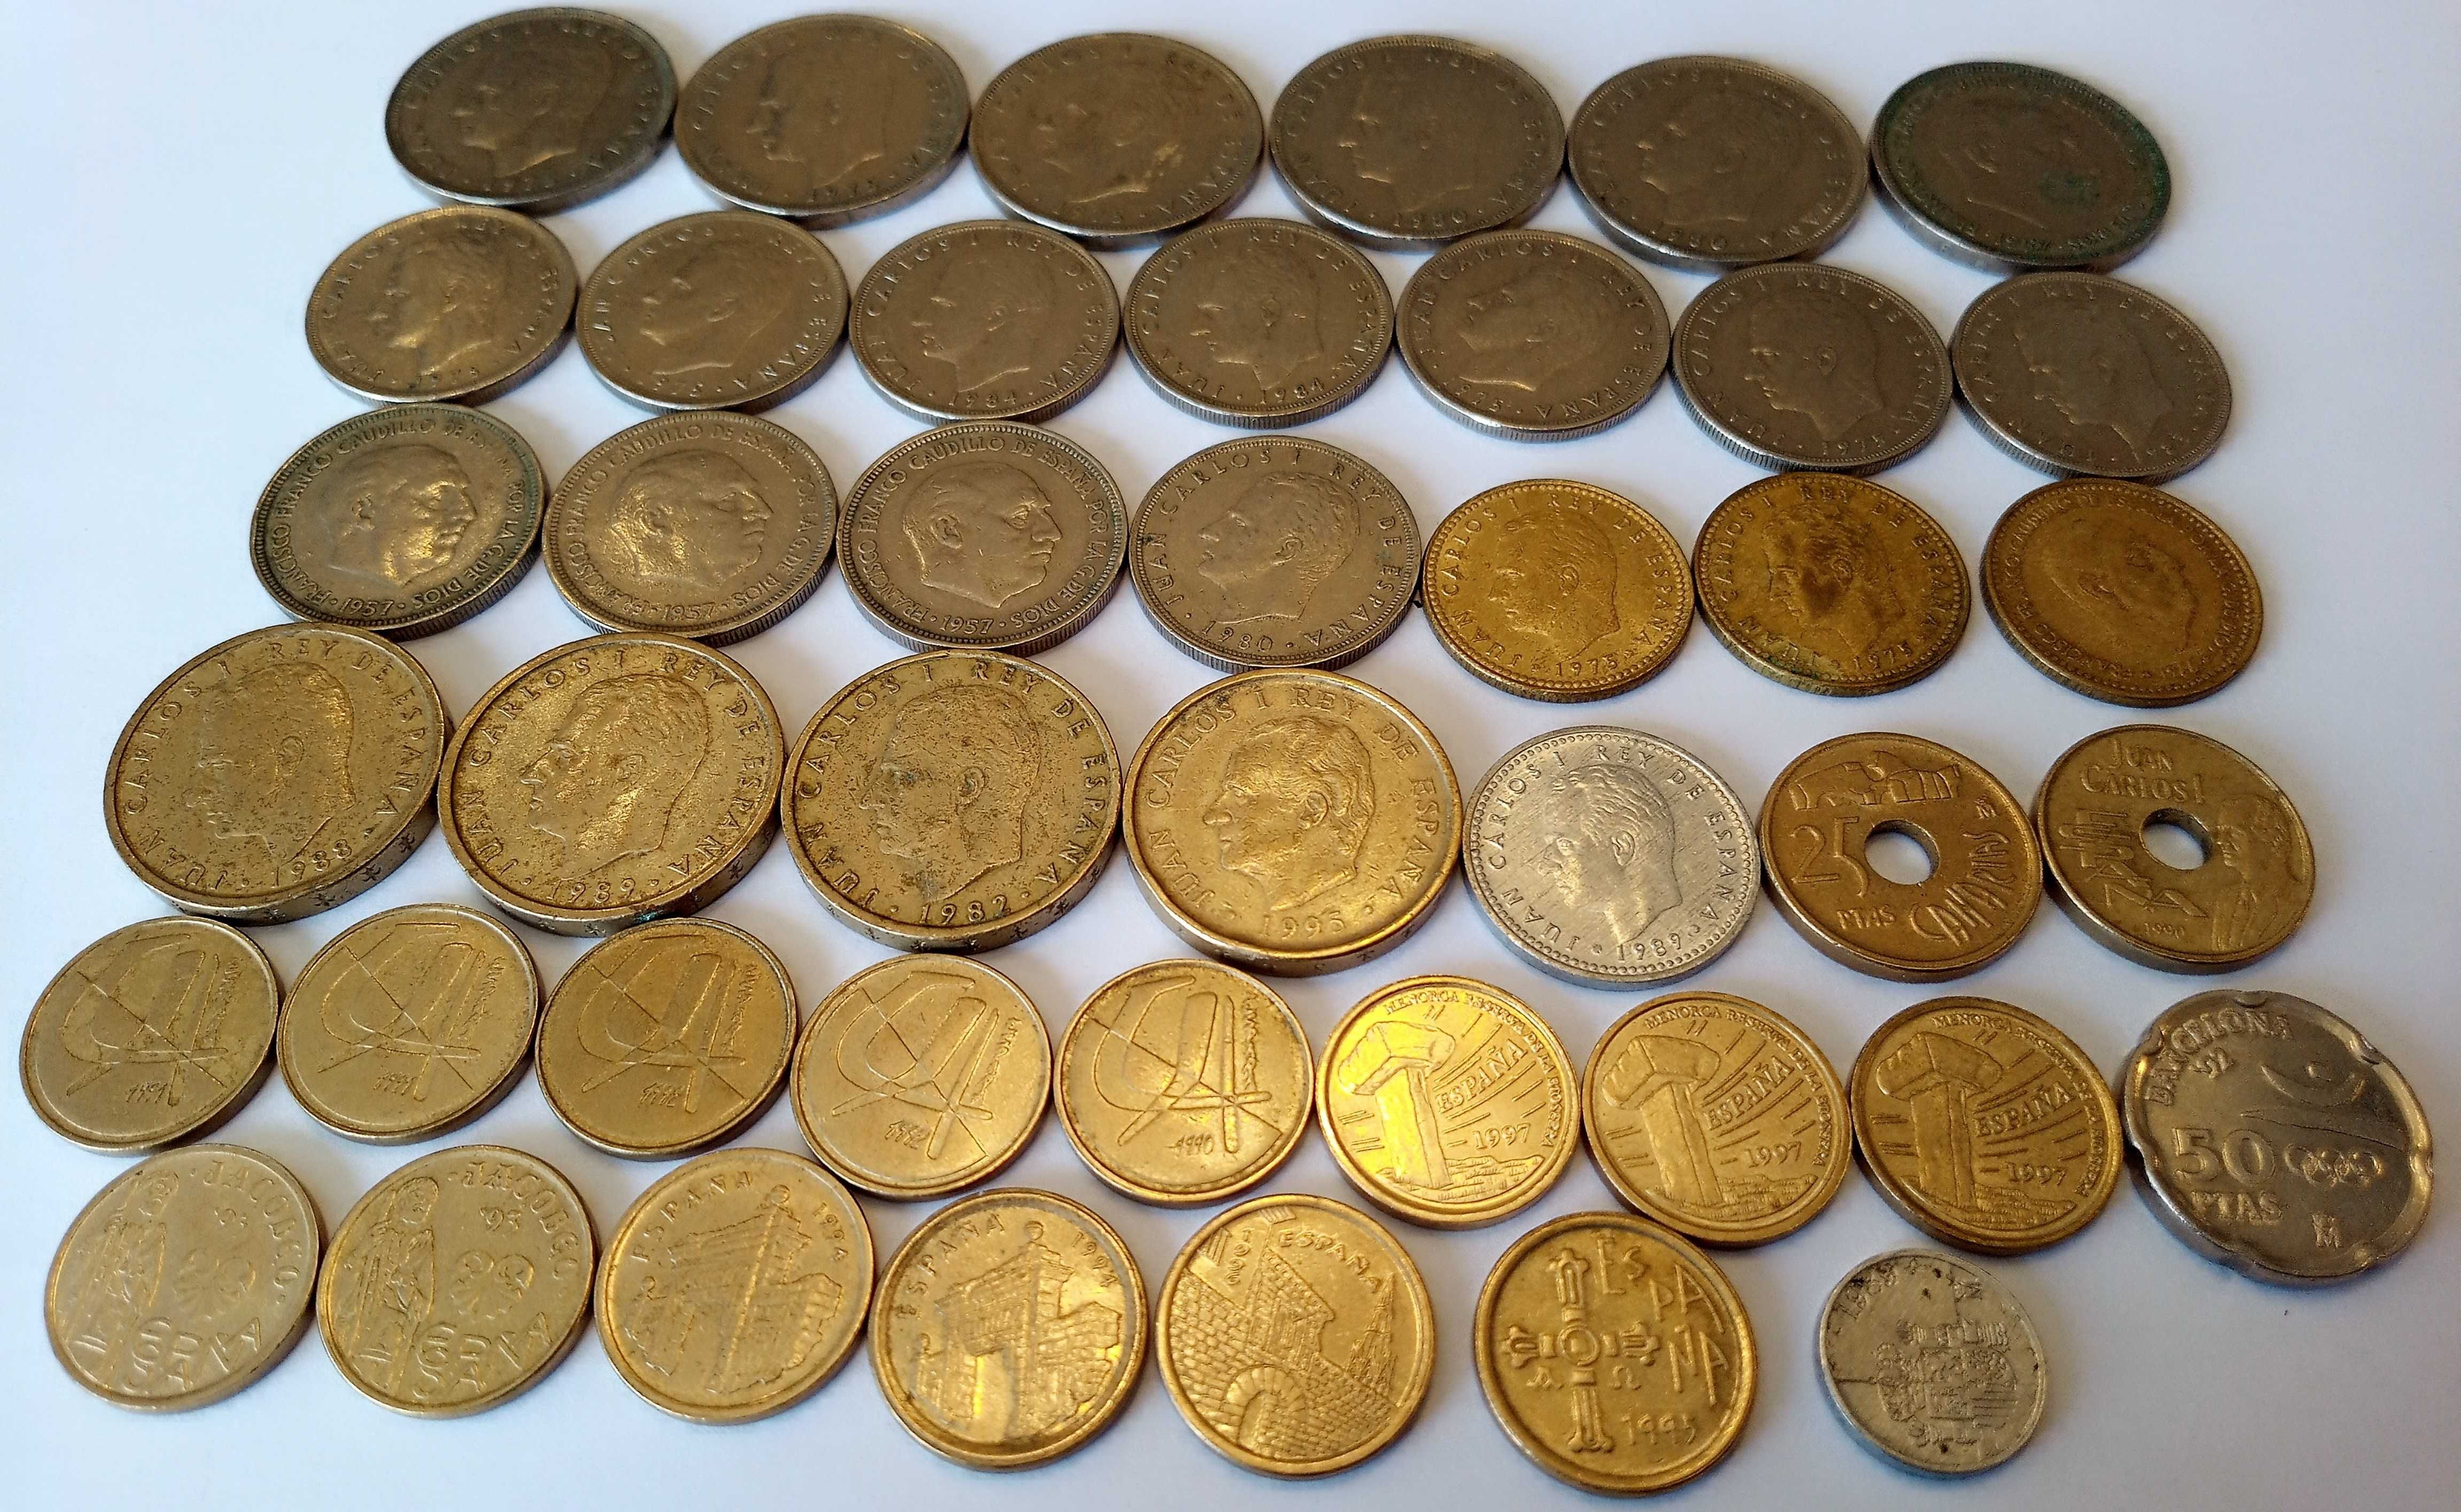 Lote de 43 moedas, pesetas.